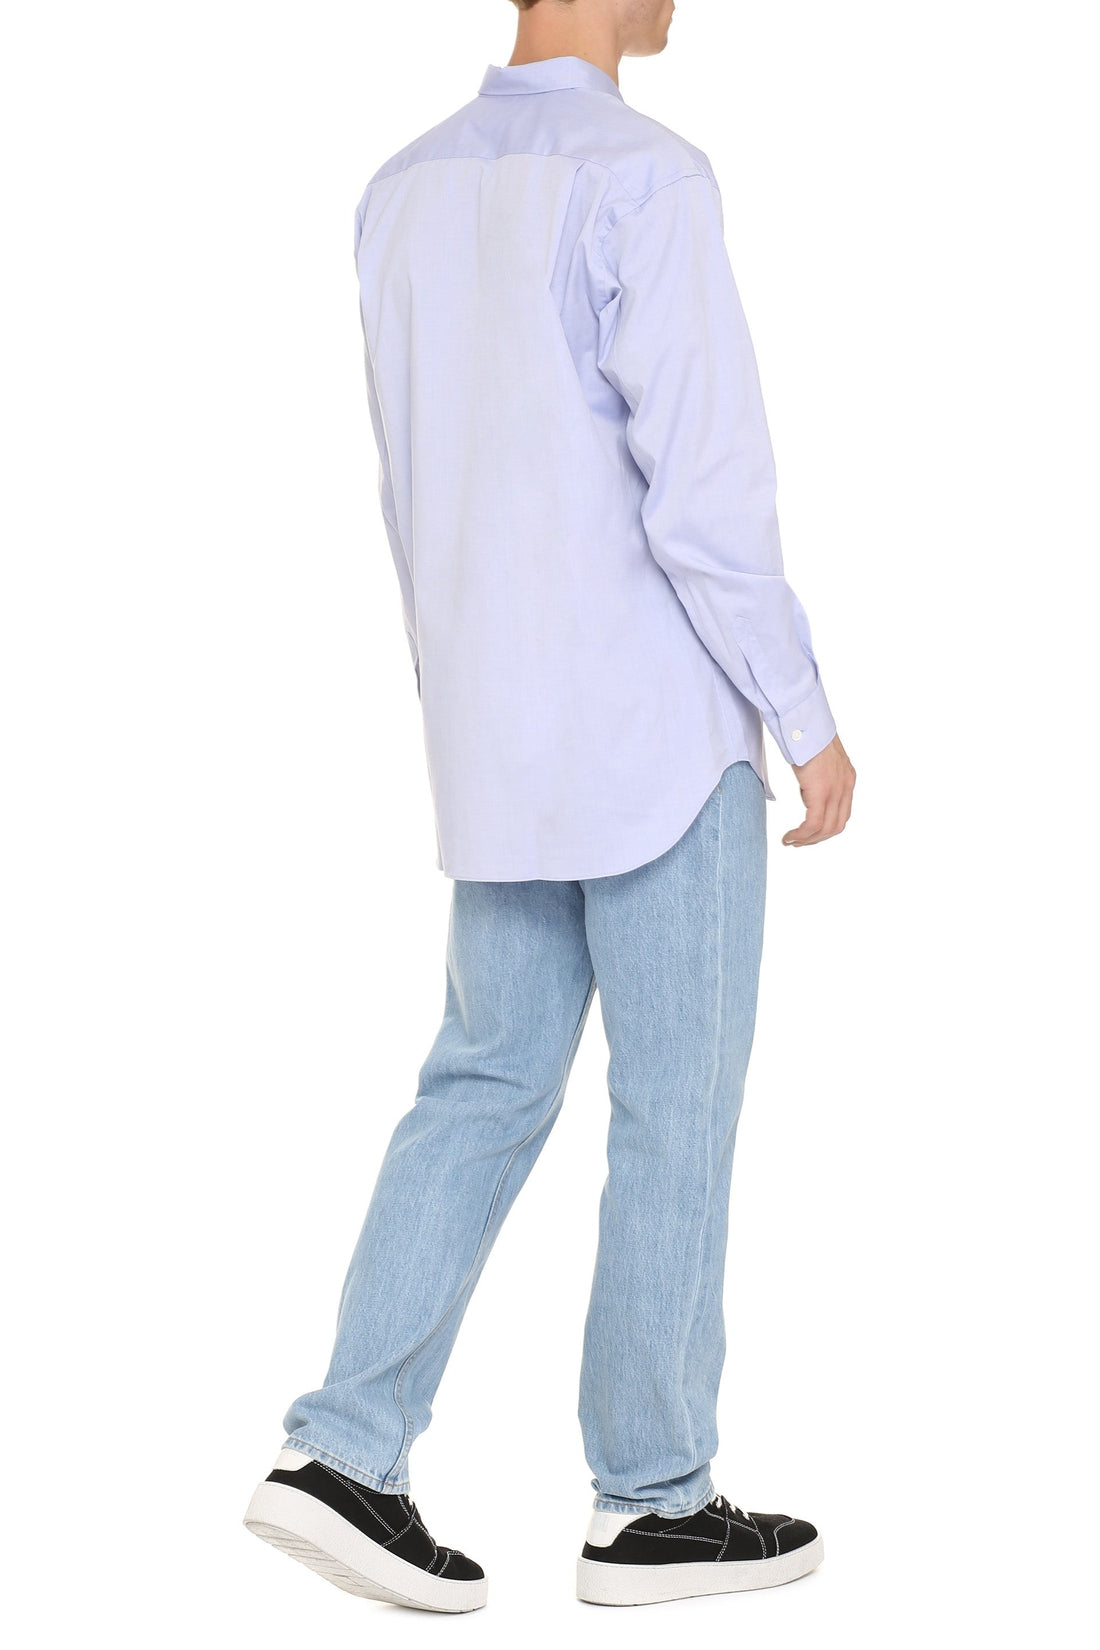 Comme des Garçons-OUTLET-SALE-Long sleeve cotton shirt-ARCHIVIST